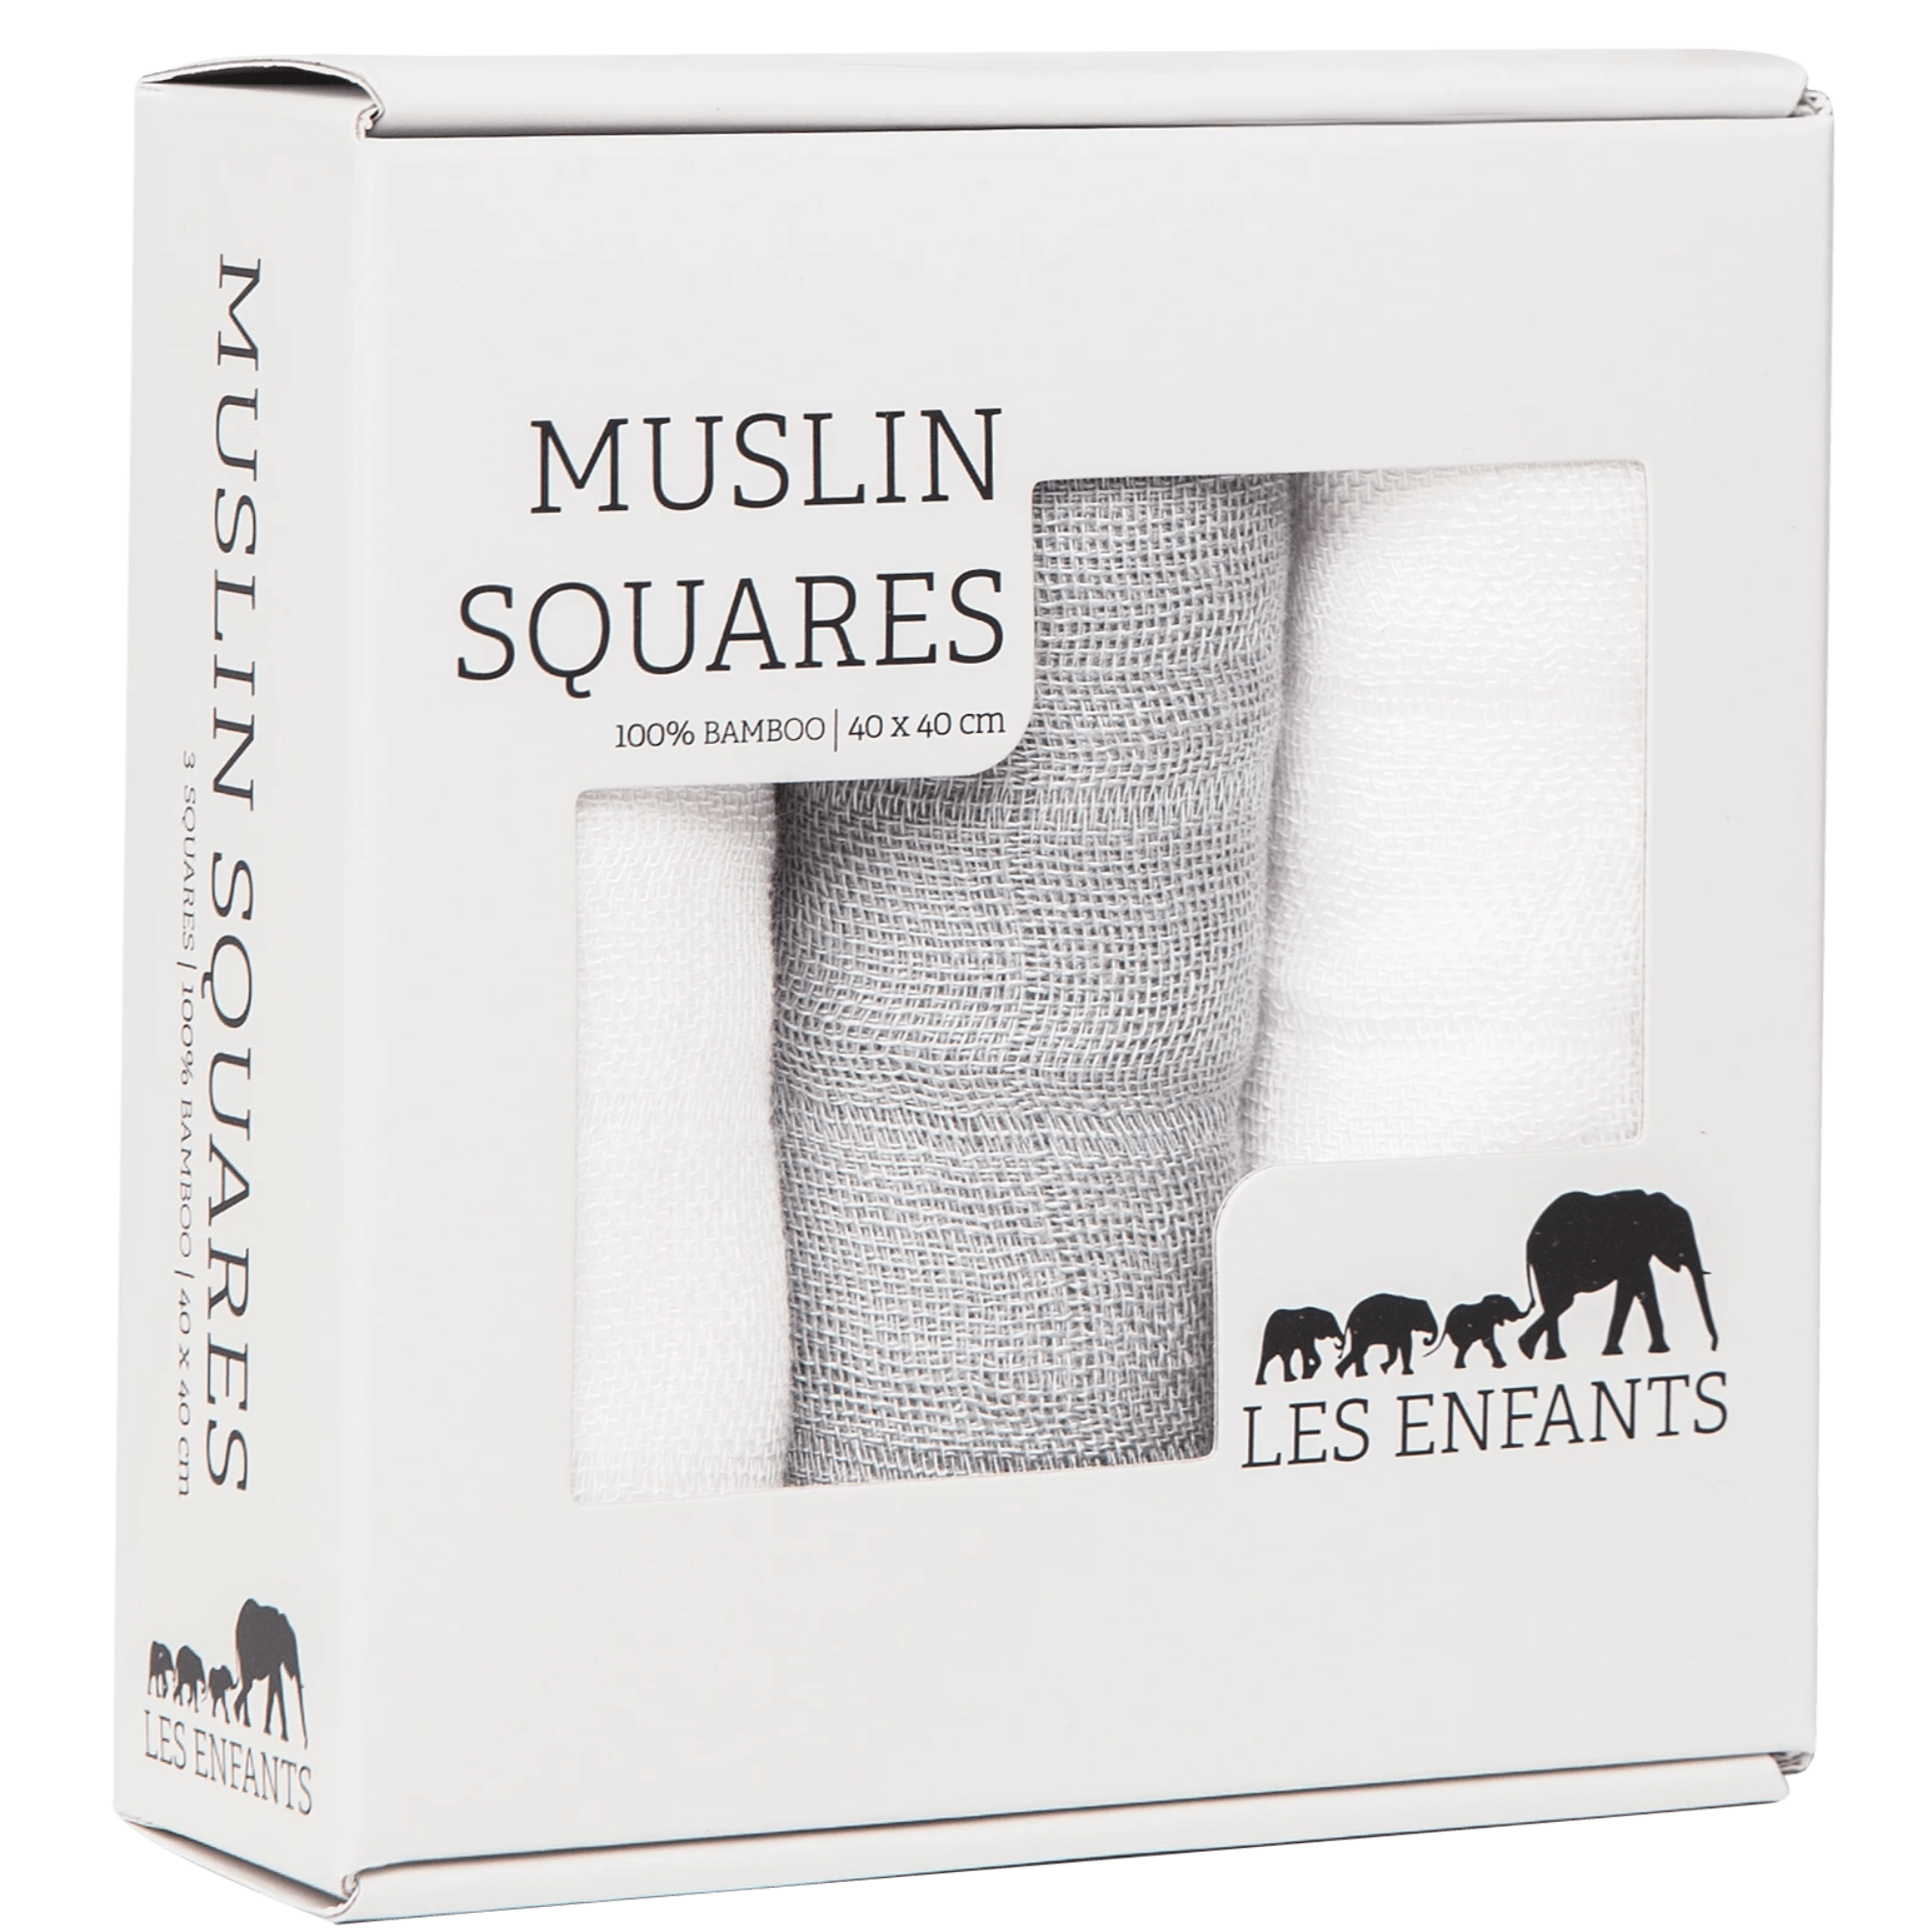 Les Enfants pack of Muslin squares, 2 whites & 1 grey